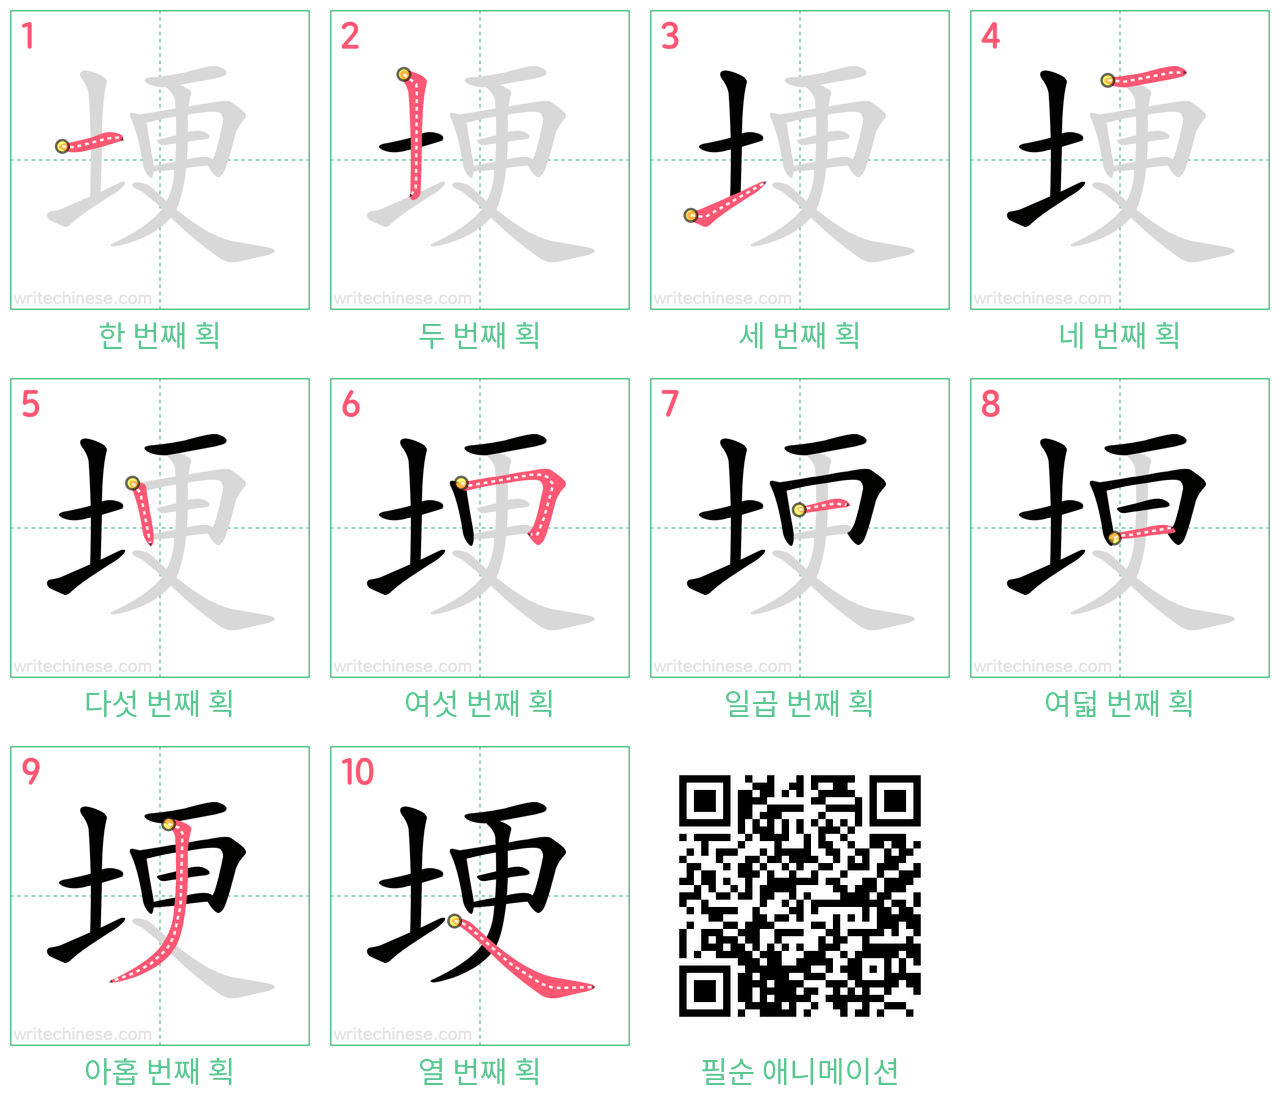 埂 step-by-step stroke order diagrams